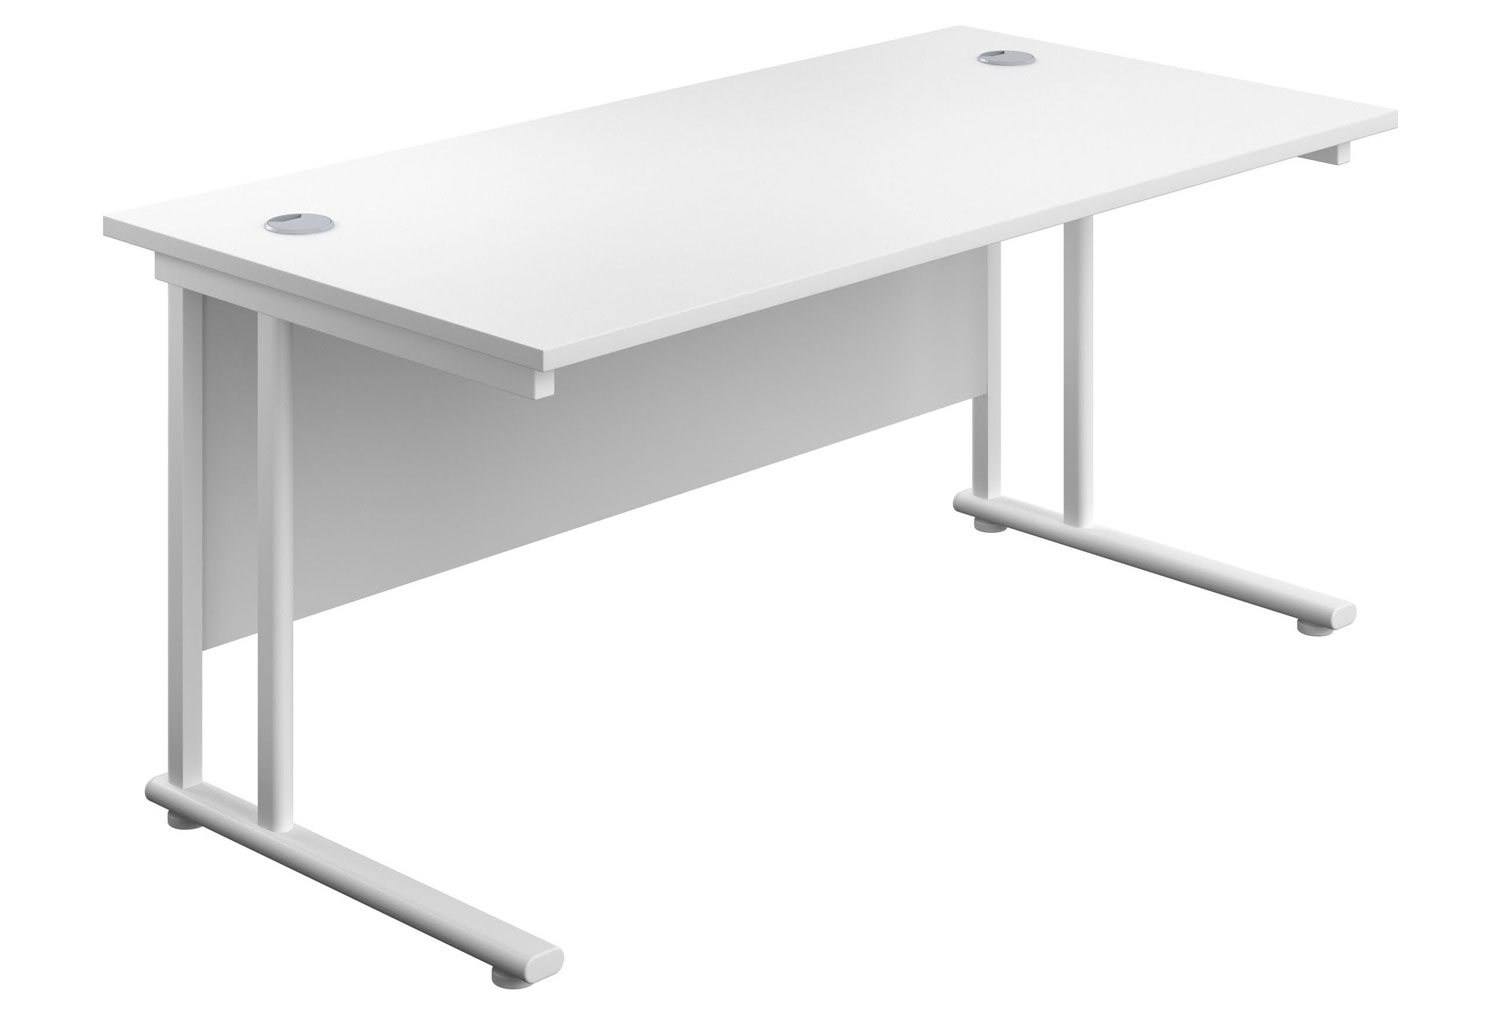 Impulse Rectangular Office Desk, 140wx80dx73h (cm), White Frame, White